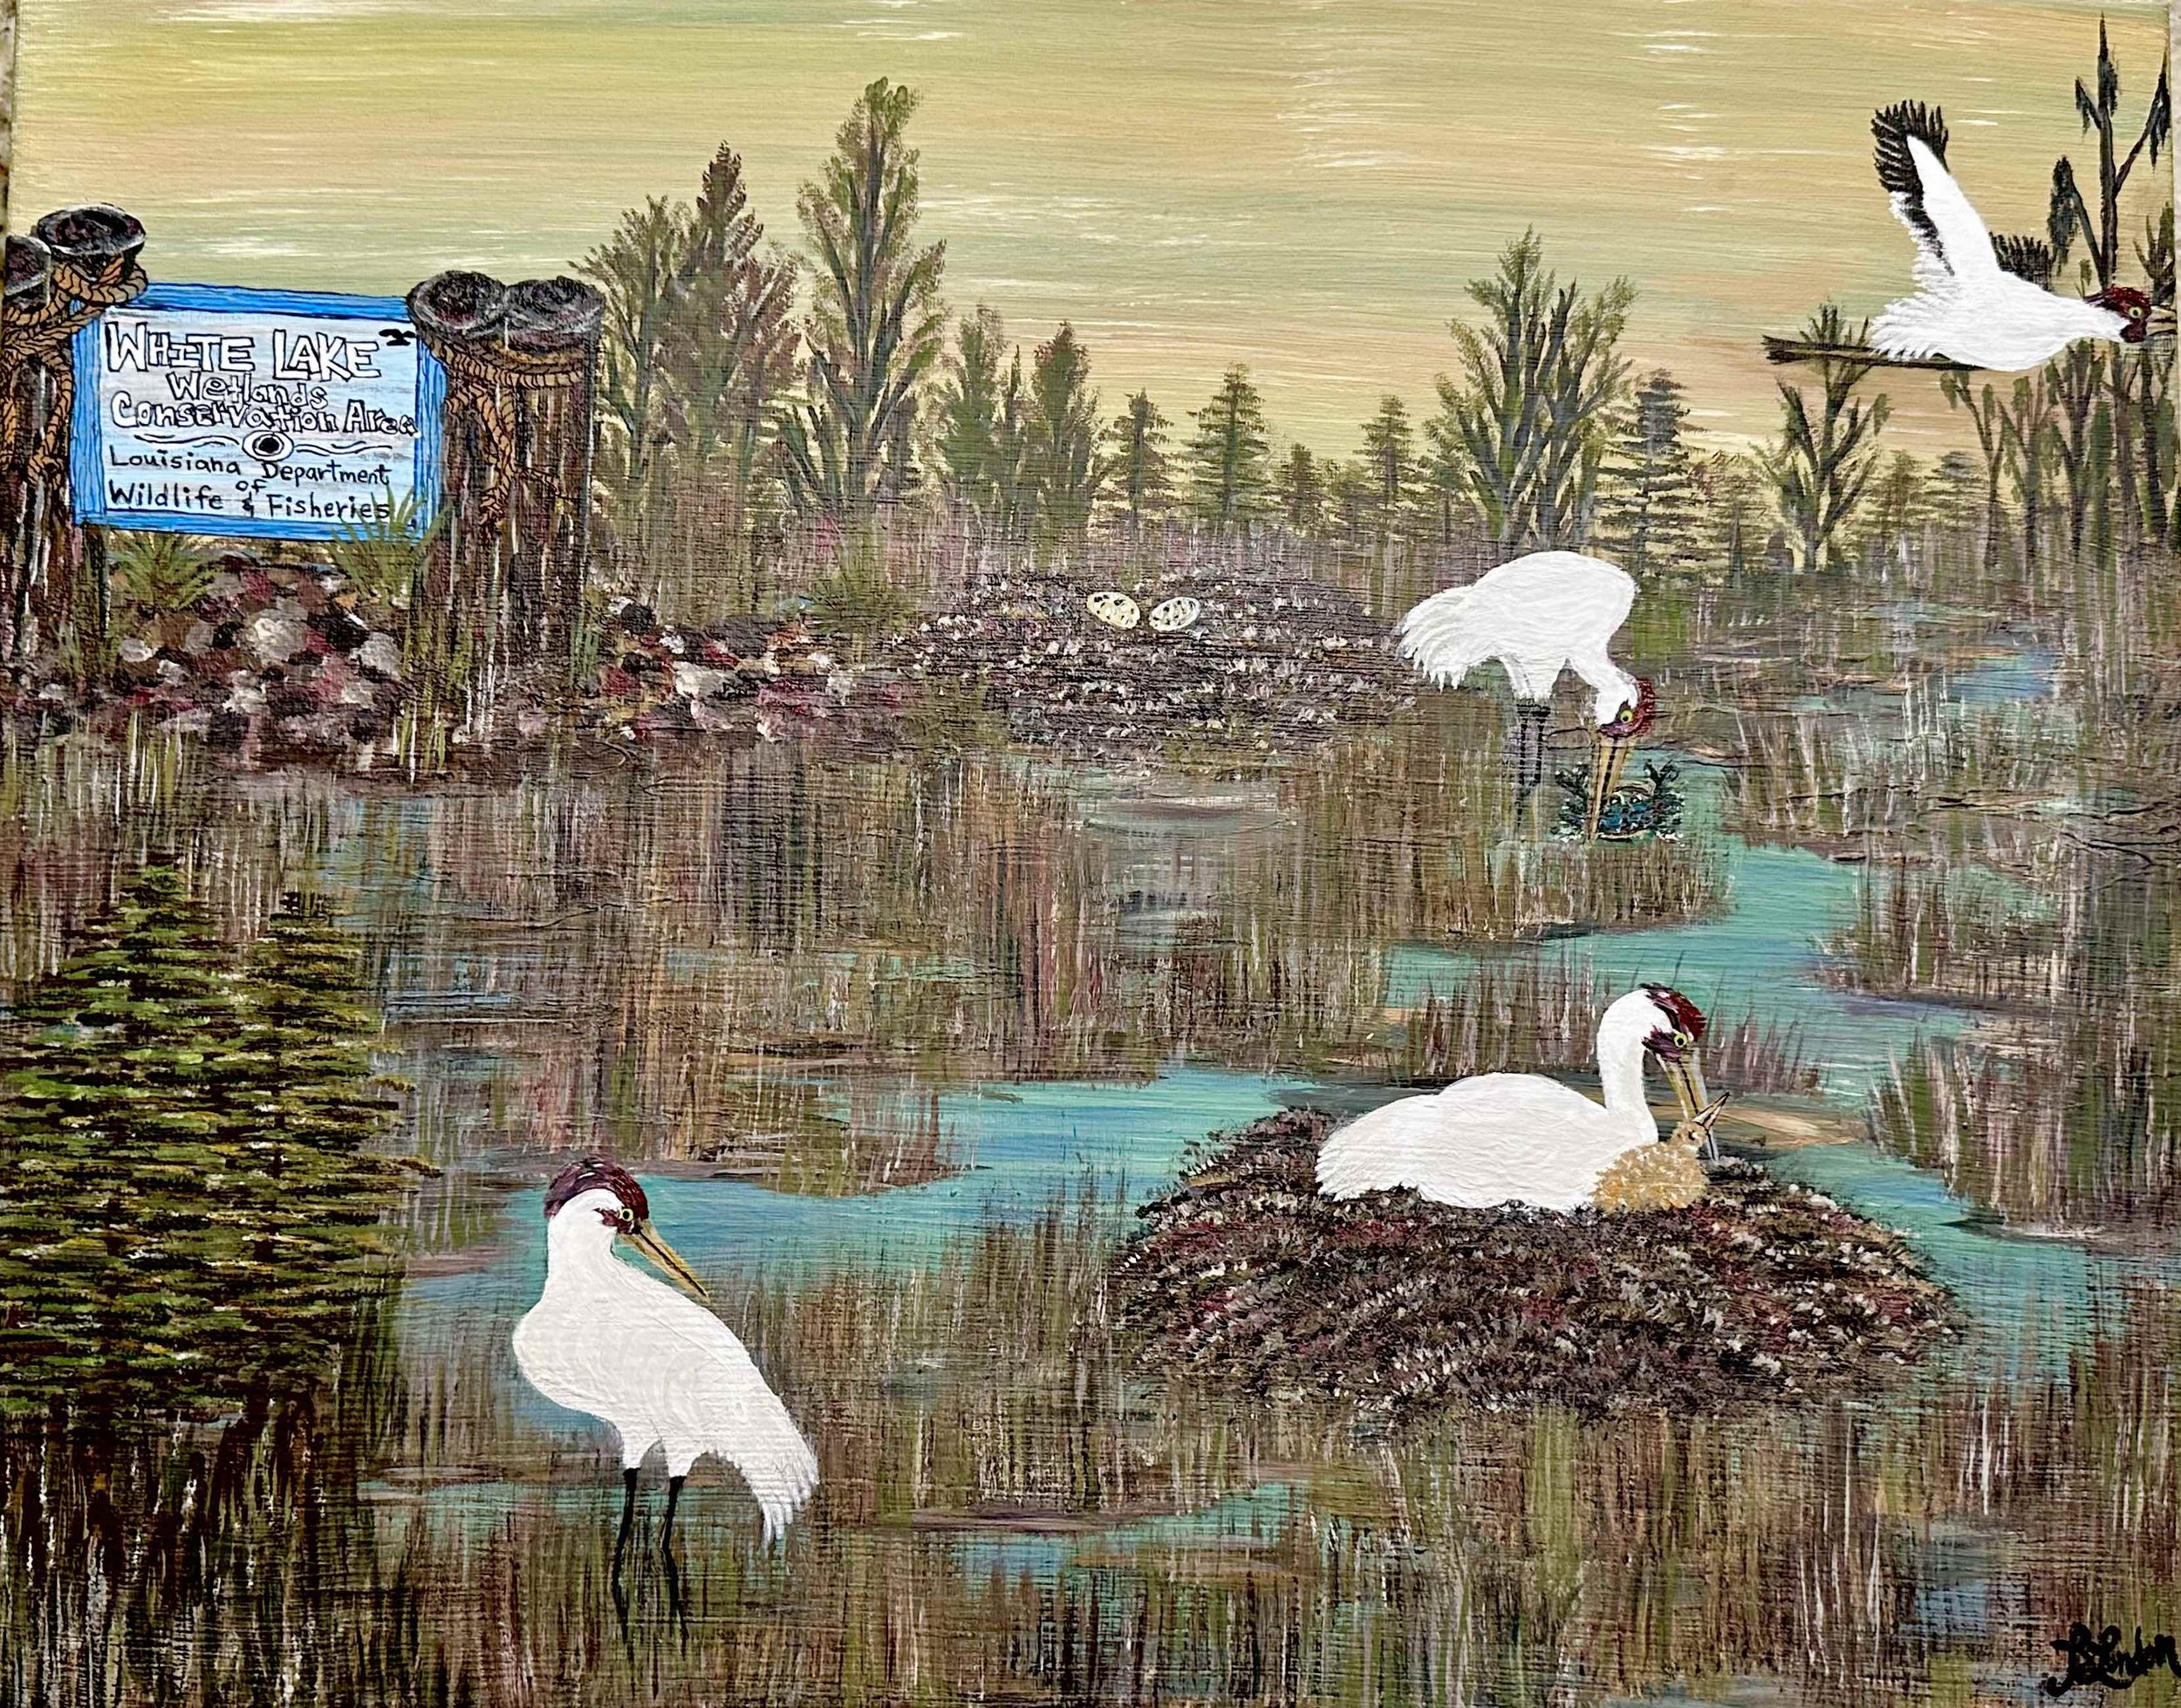 #206 White Lake Whooping Cranes